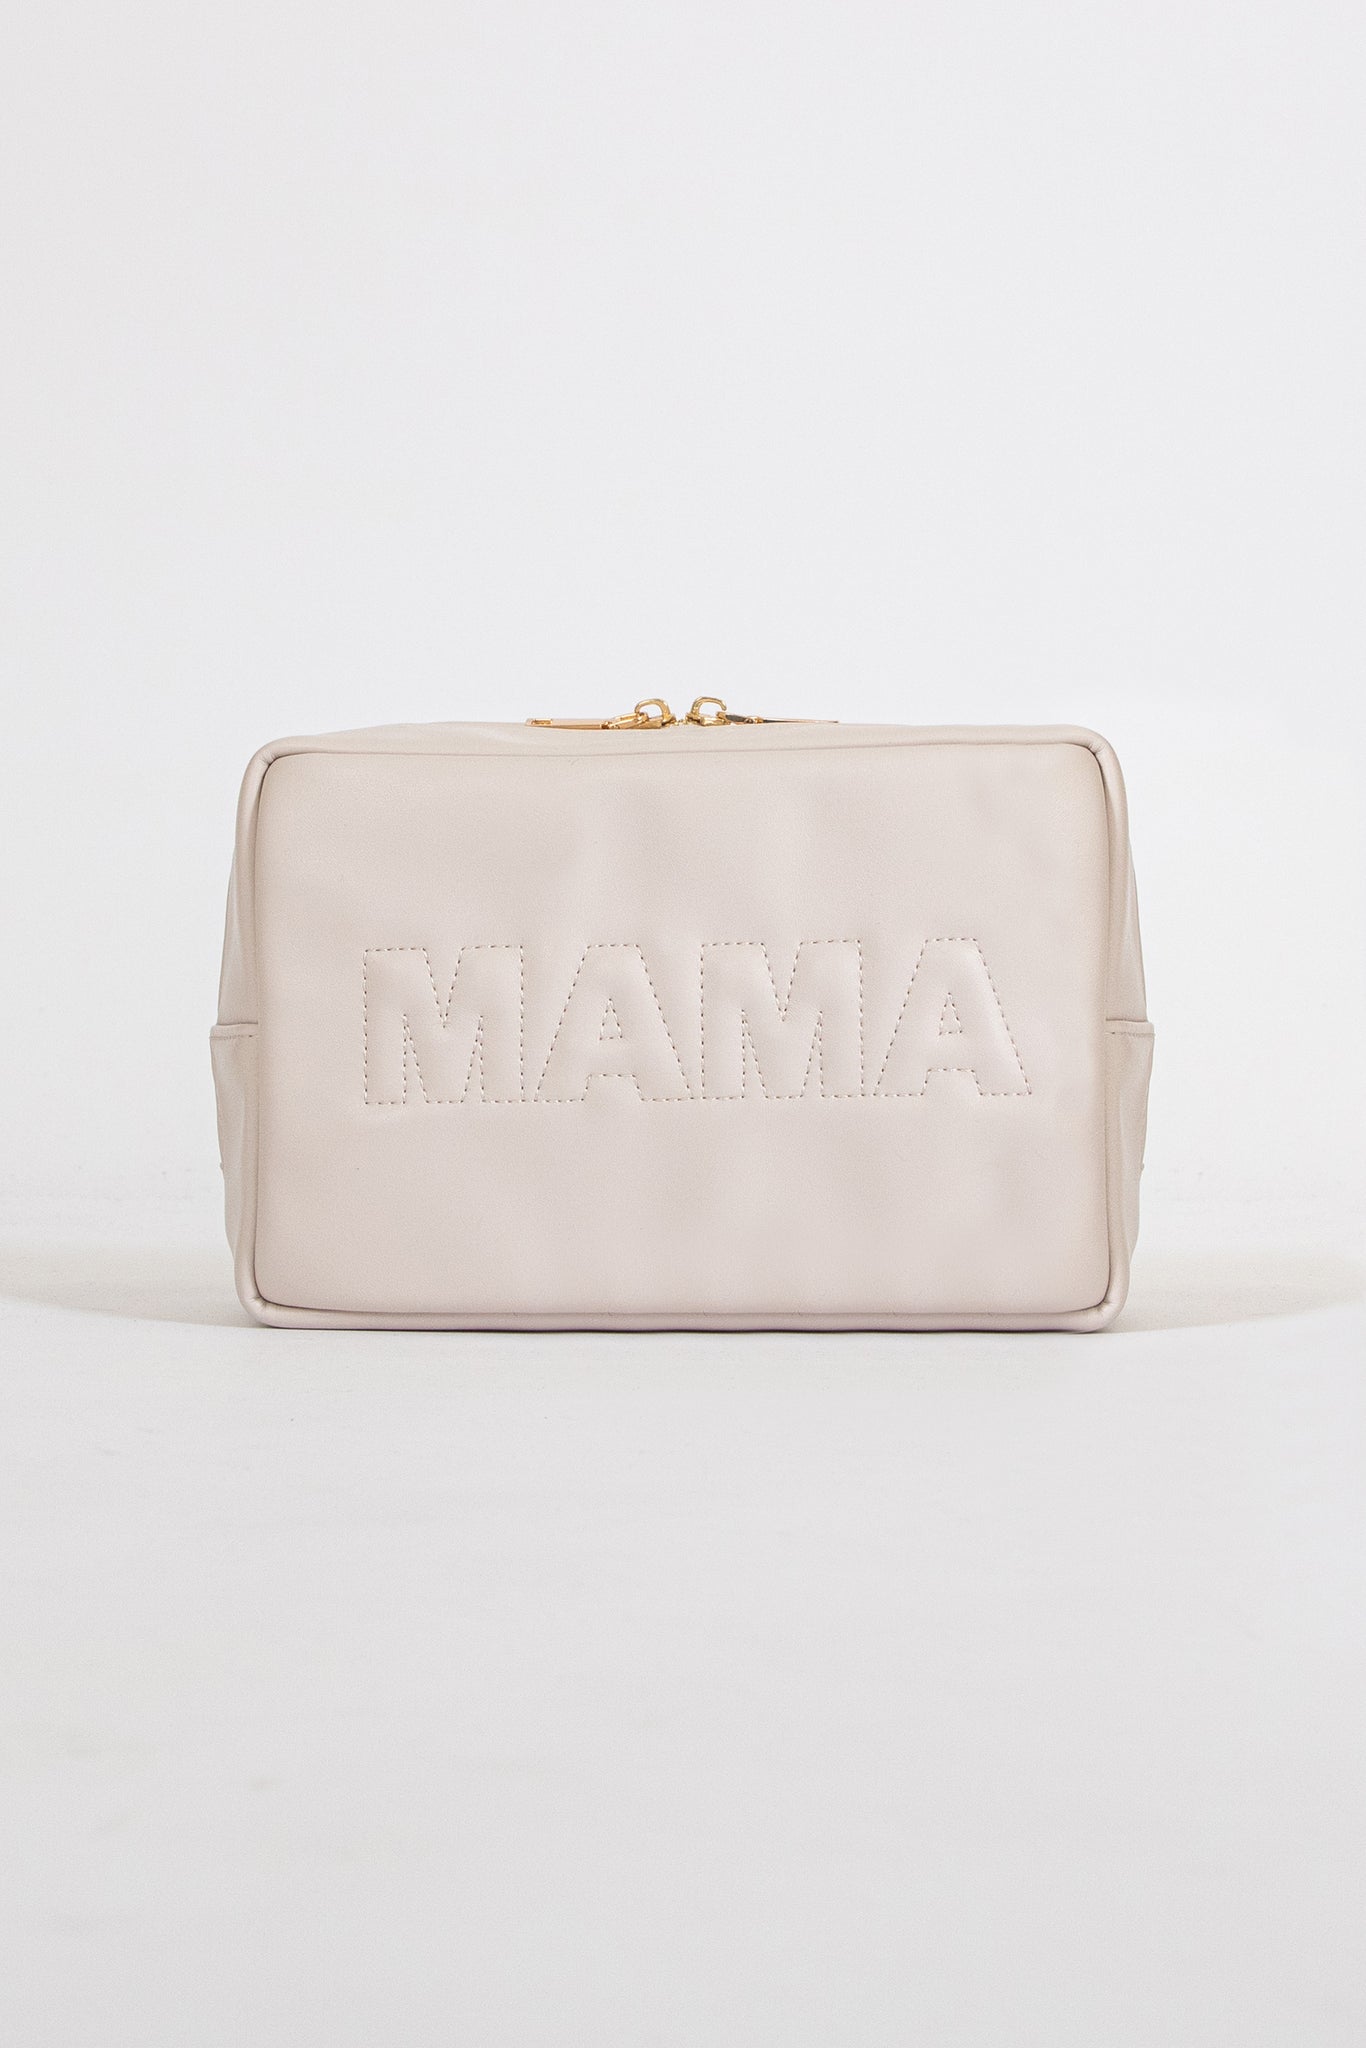 MAMA Vegan Travel Bag | Ivory